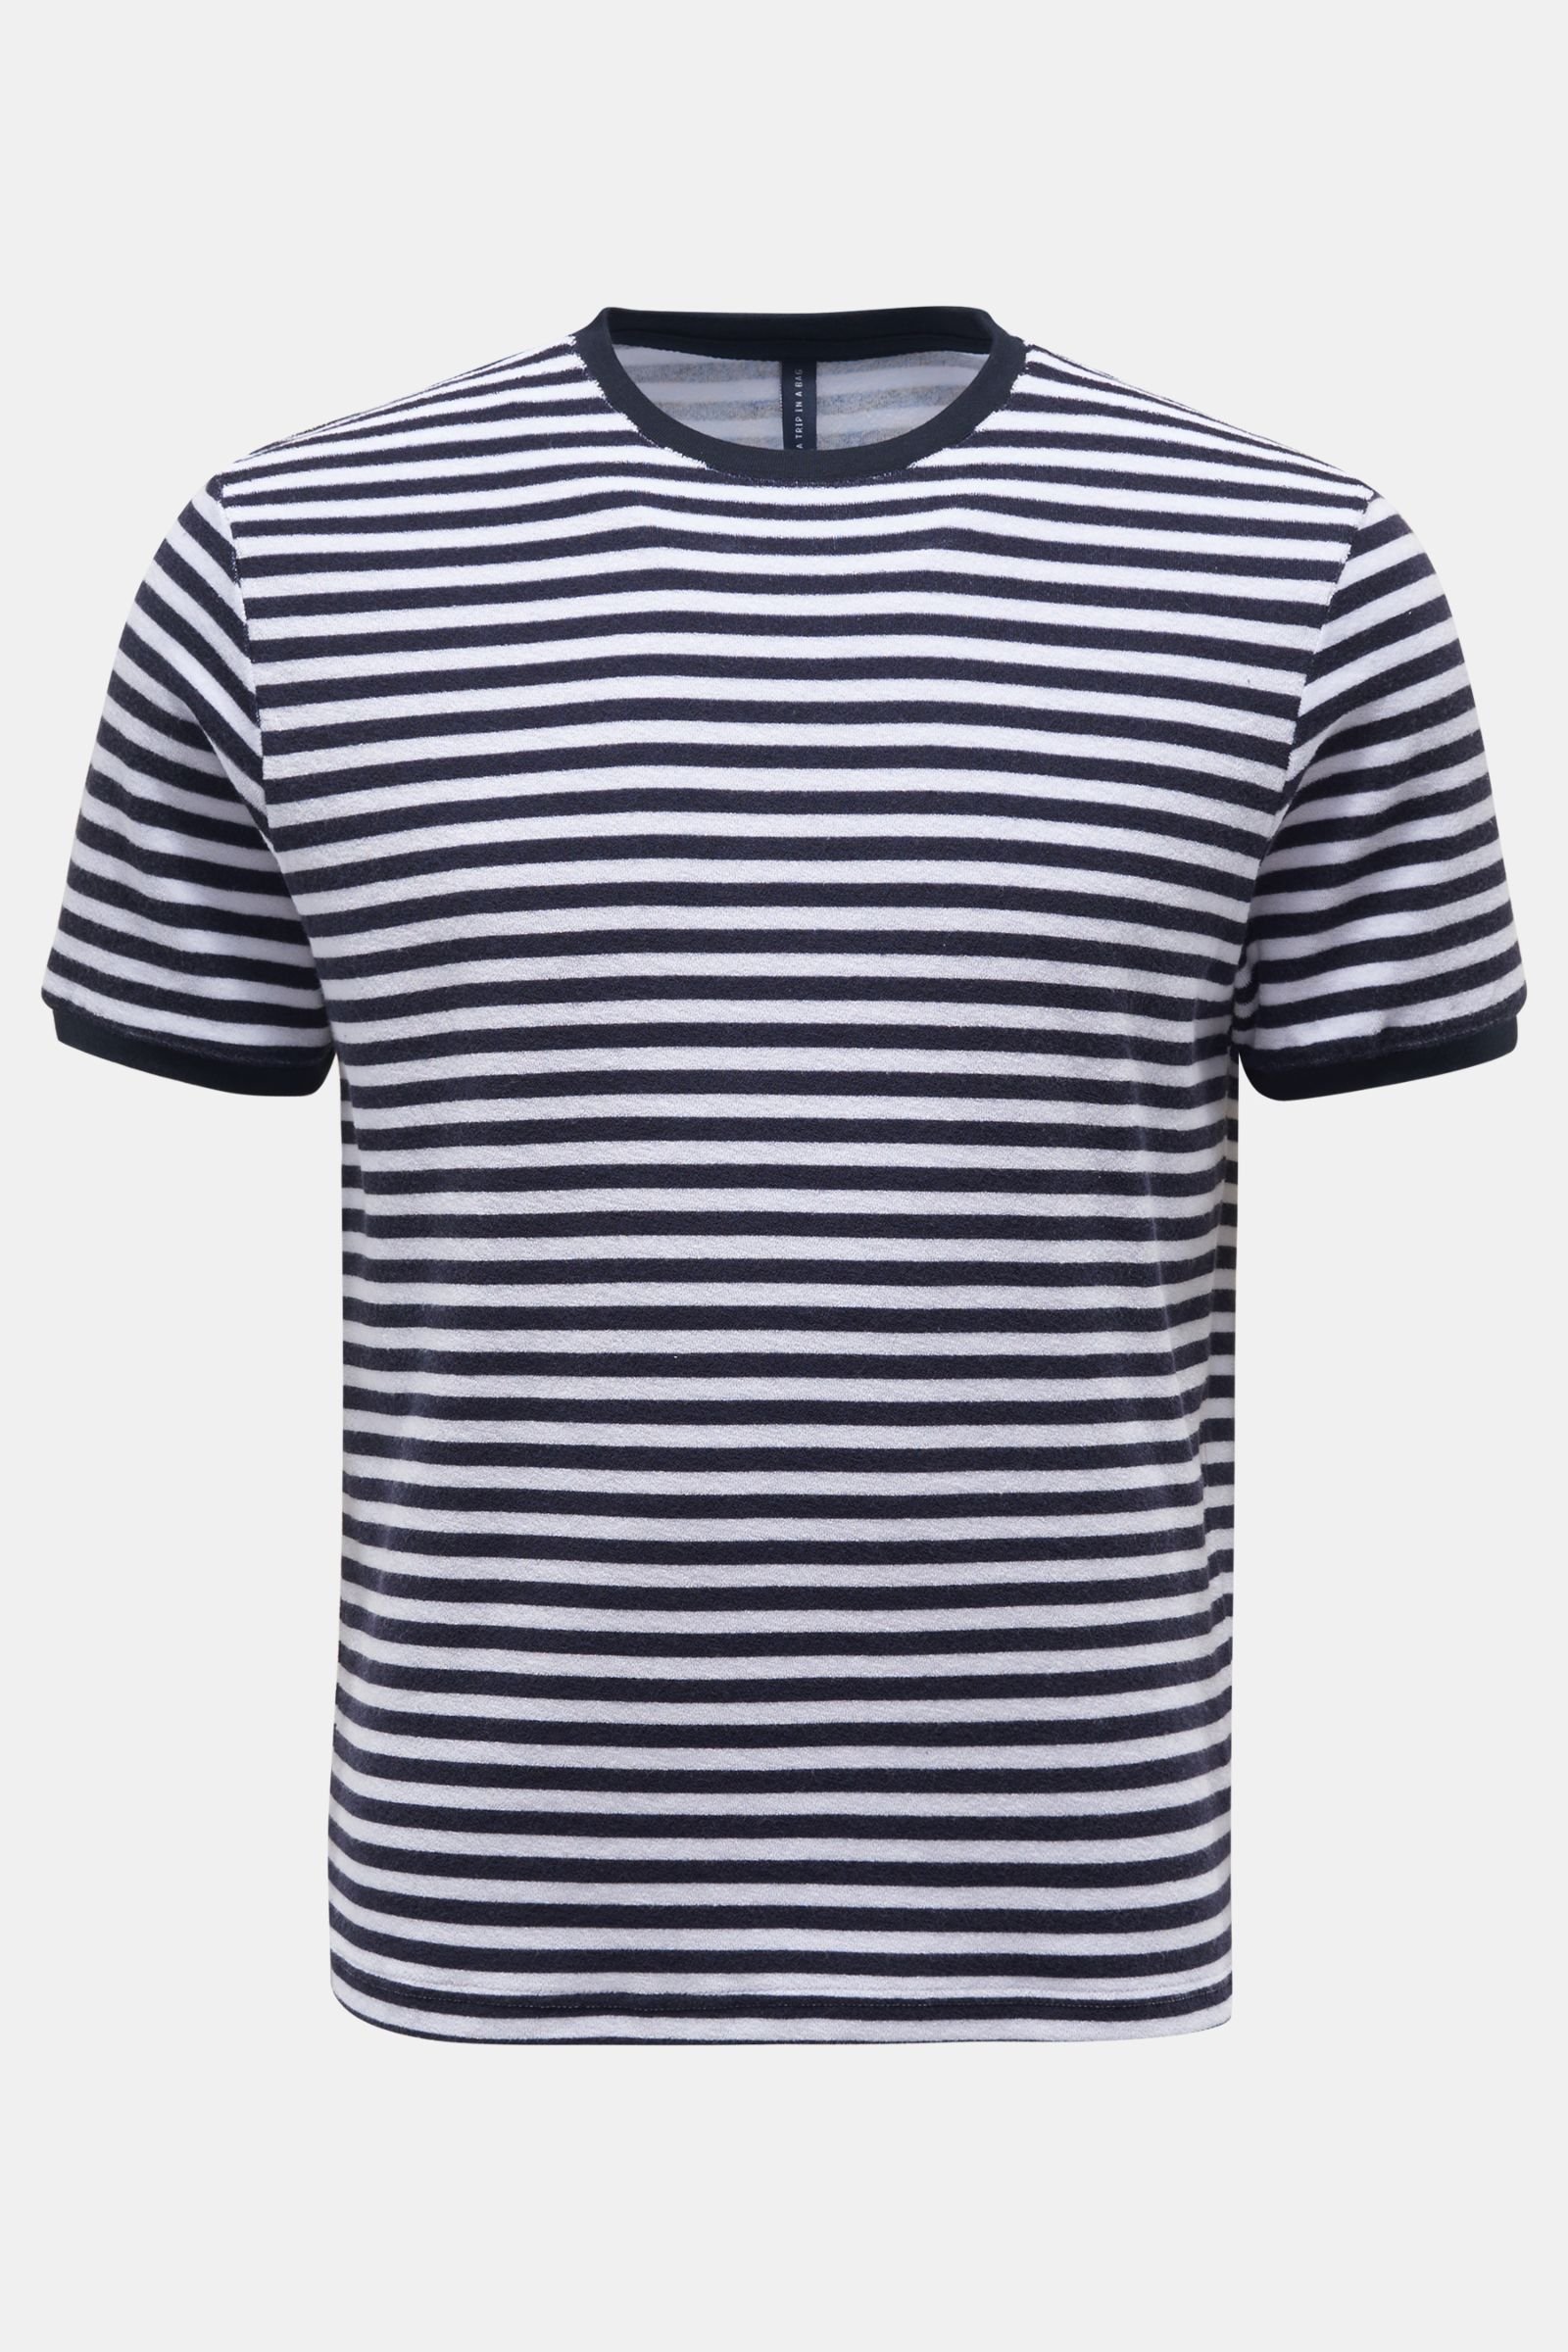 Terrycloth crew neck T-shirt 'Terry Stripe Tee' navy/white striped